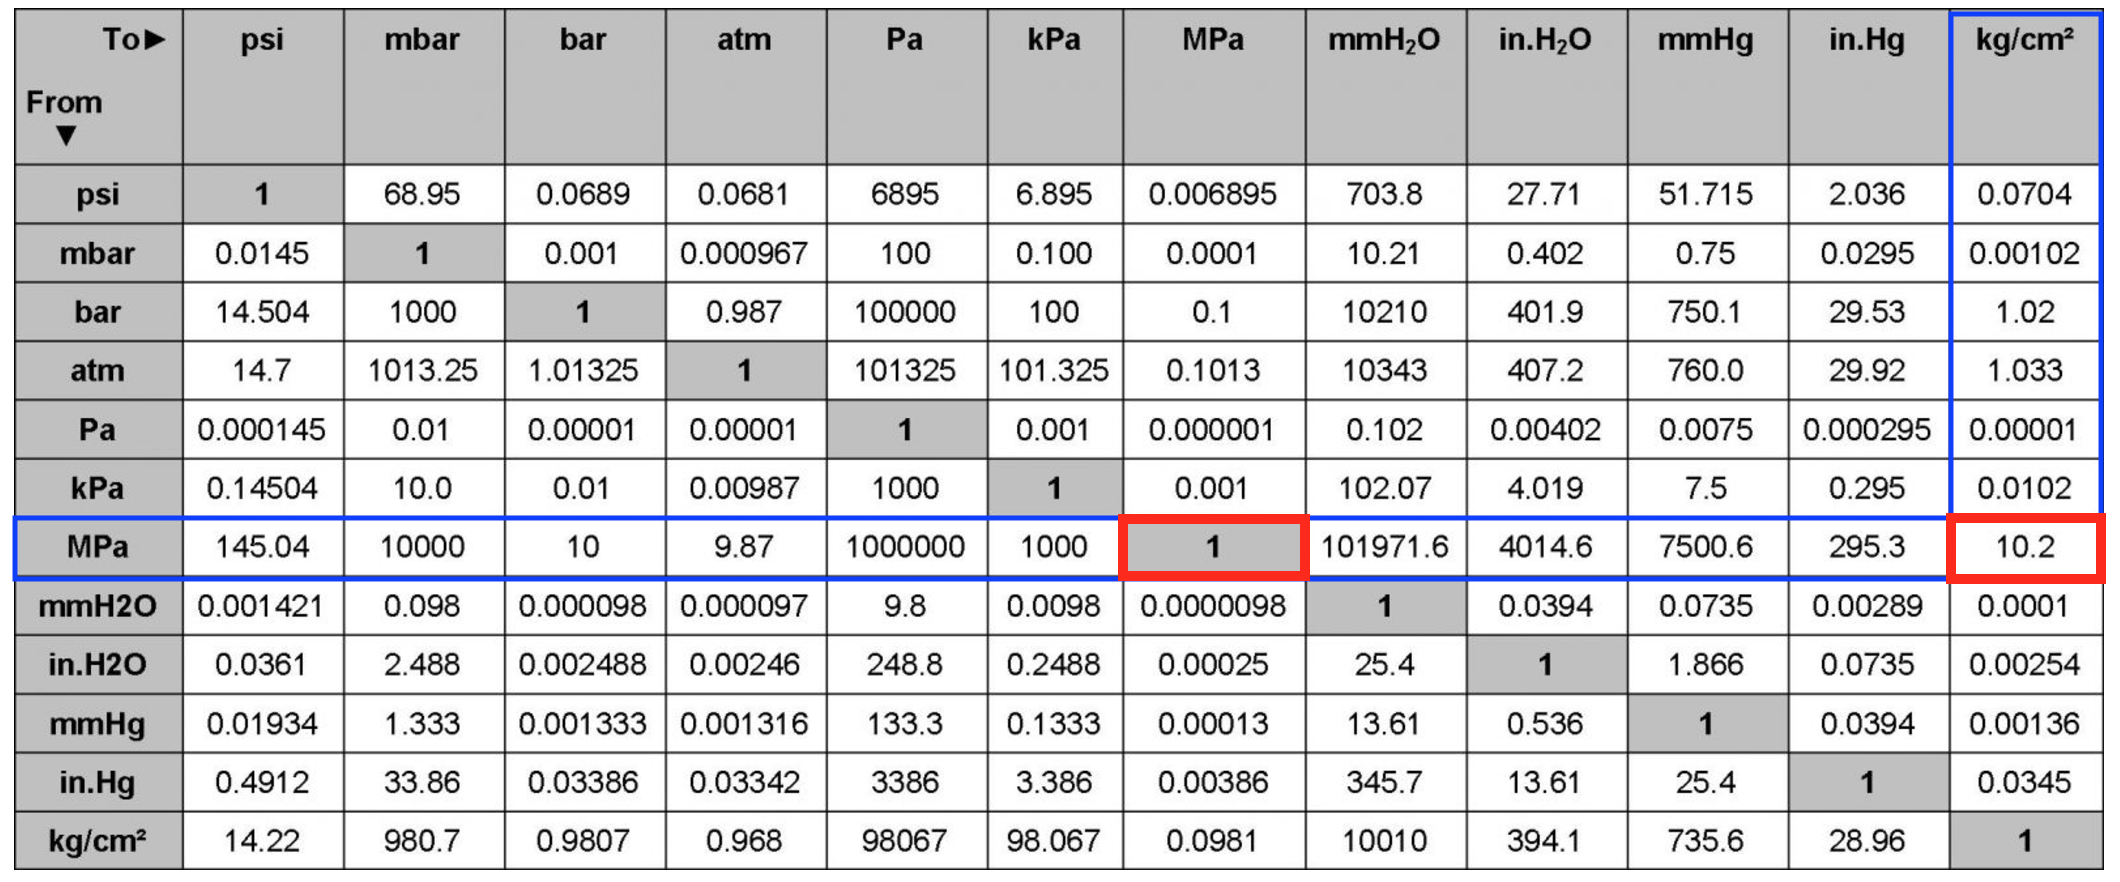 500 кдж в кг. Единицы измерения давления psi. Таблица давления МПА В бар и атм. 1 MPA В кгс/см2. Единицы измерения давления кгс/см2.